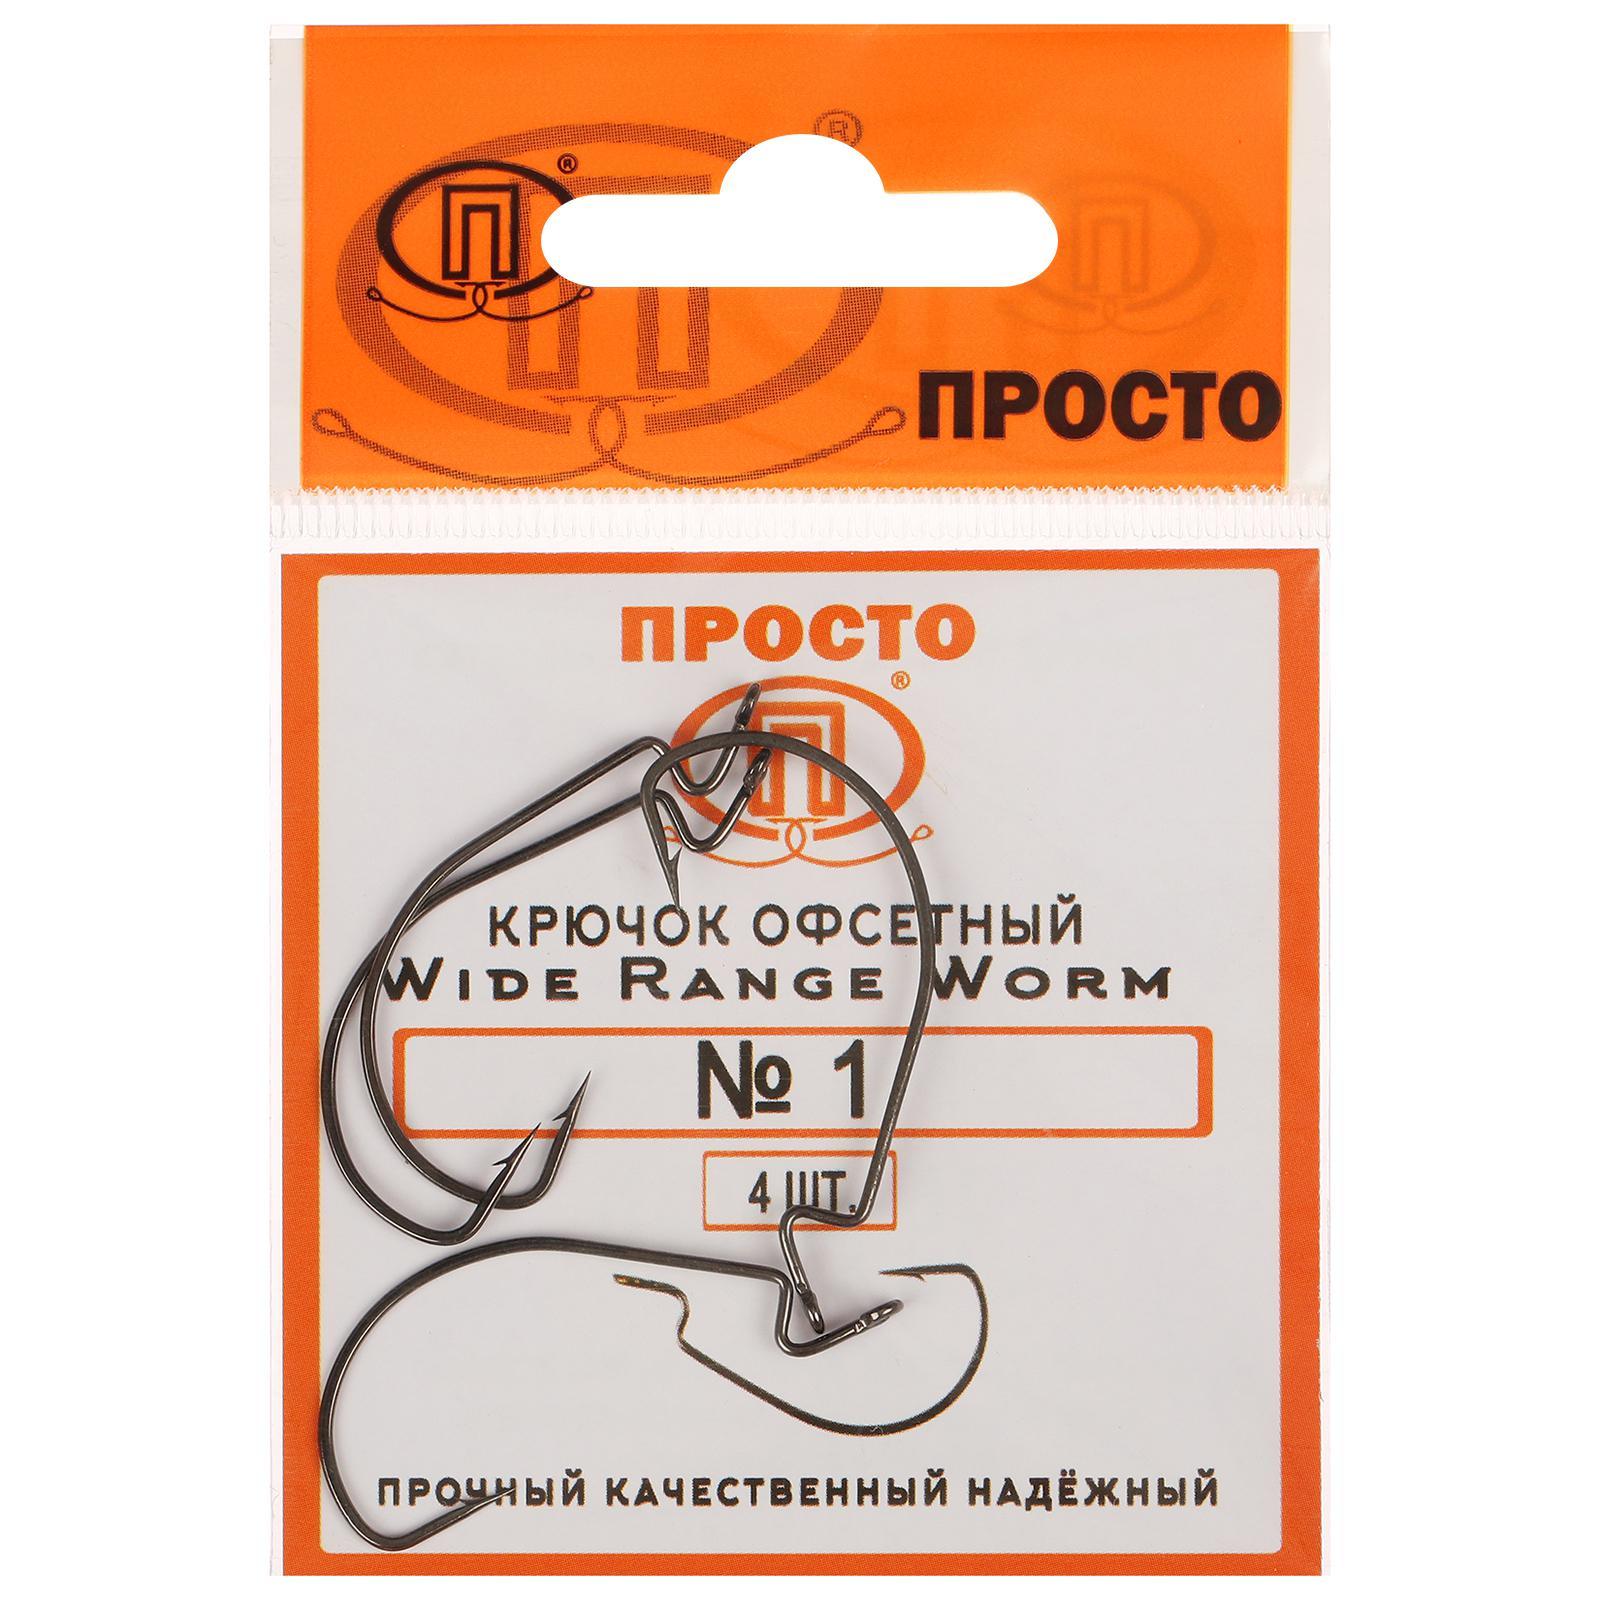 Крючки офсетные Wide range worm №1, 4 шт. в упаковке